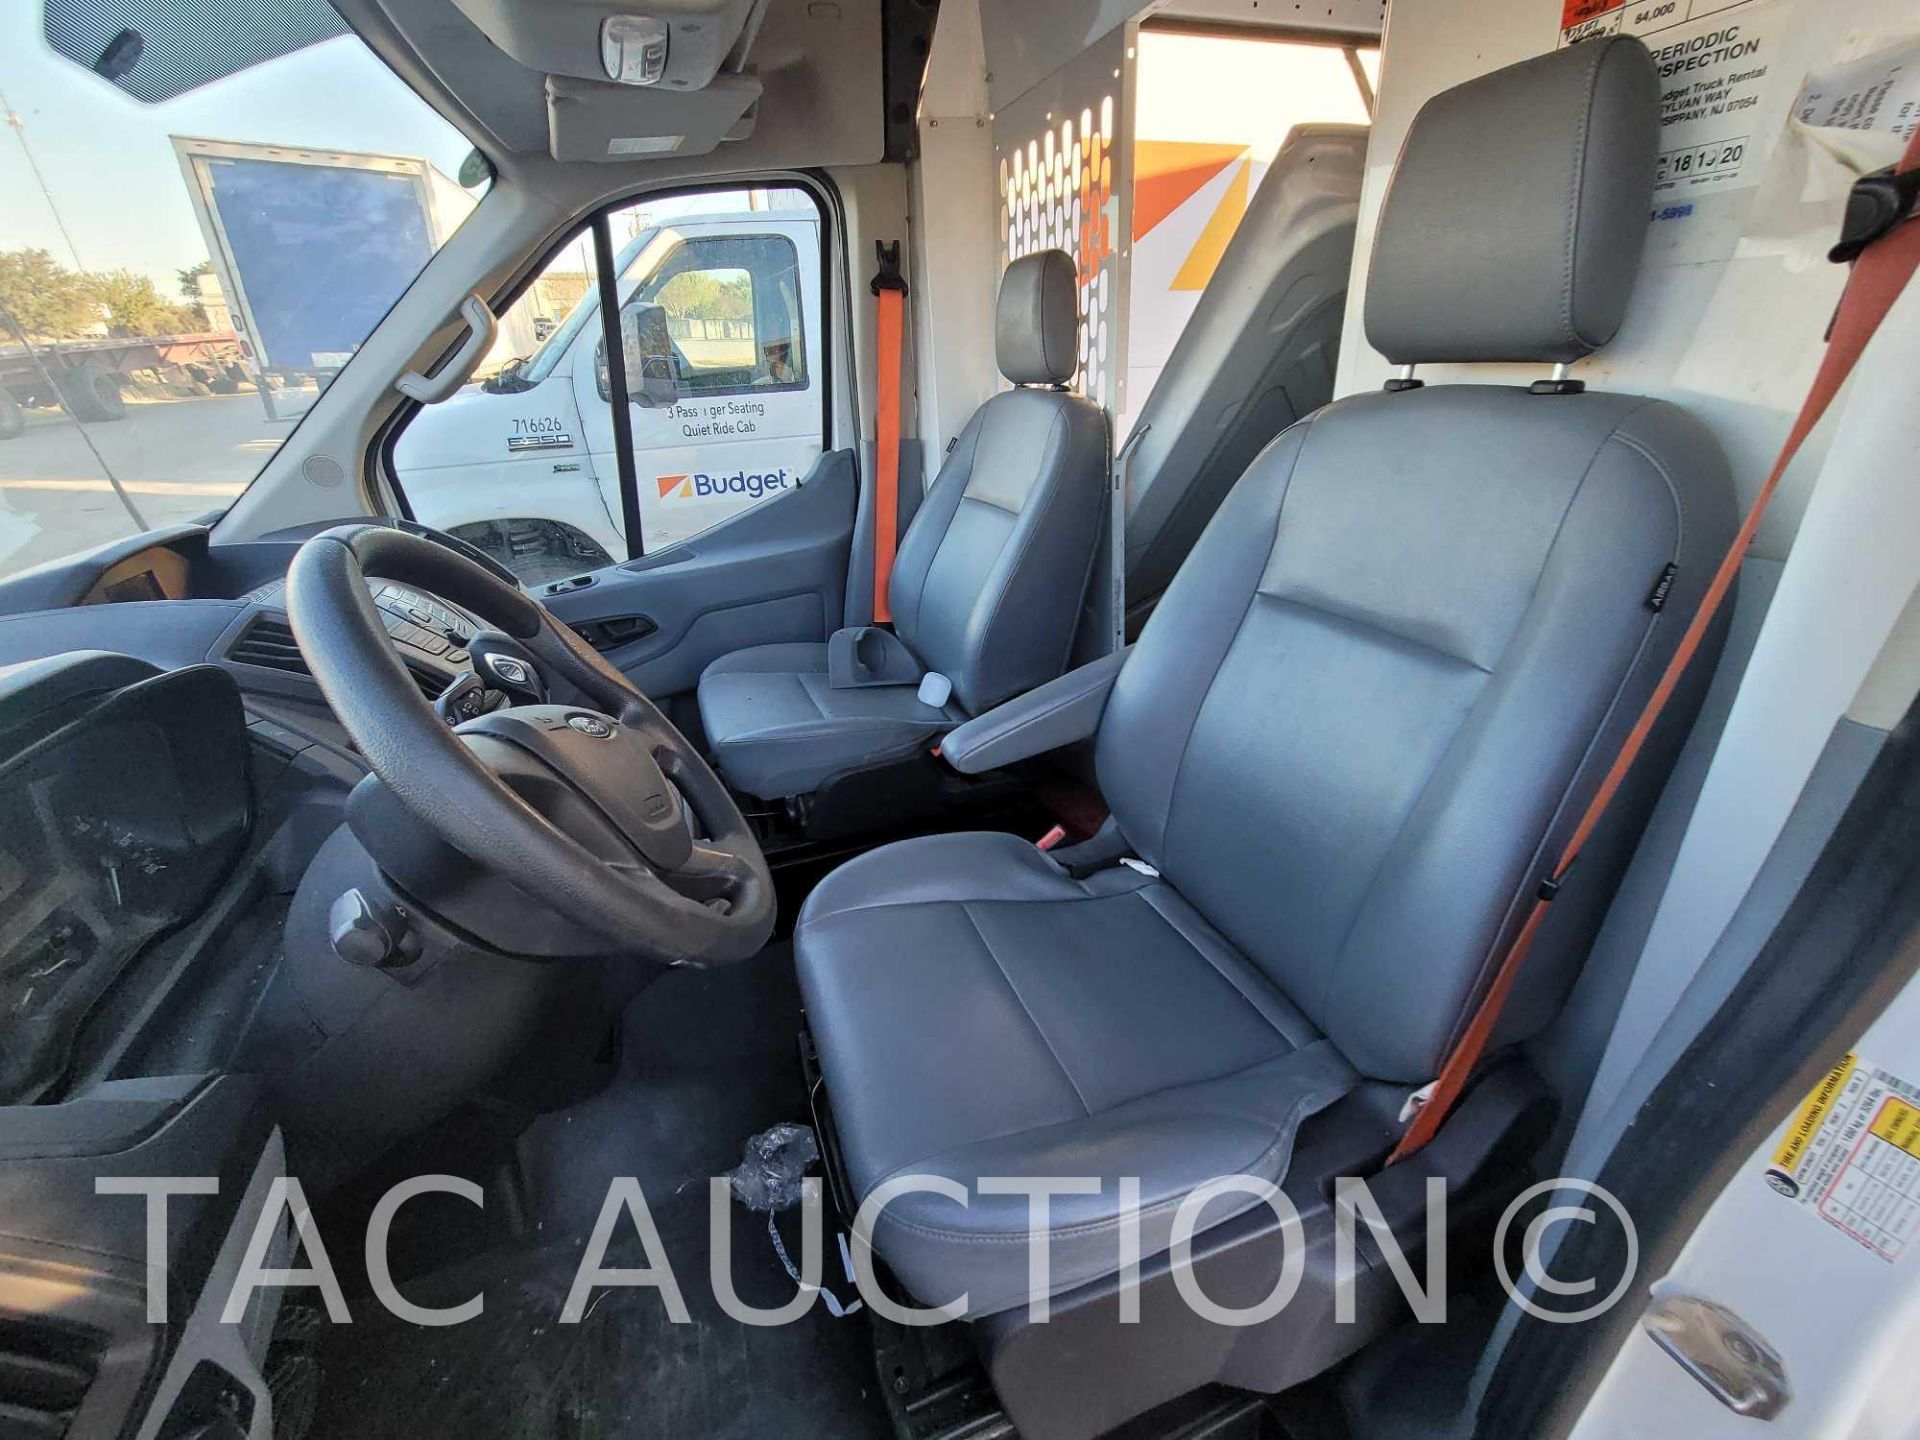 2019 Ford Transit 150 Cargo Van - Image 18 of 40